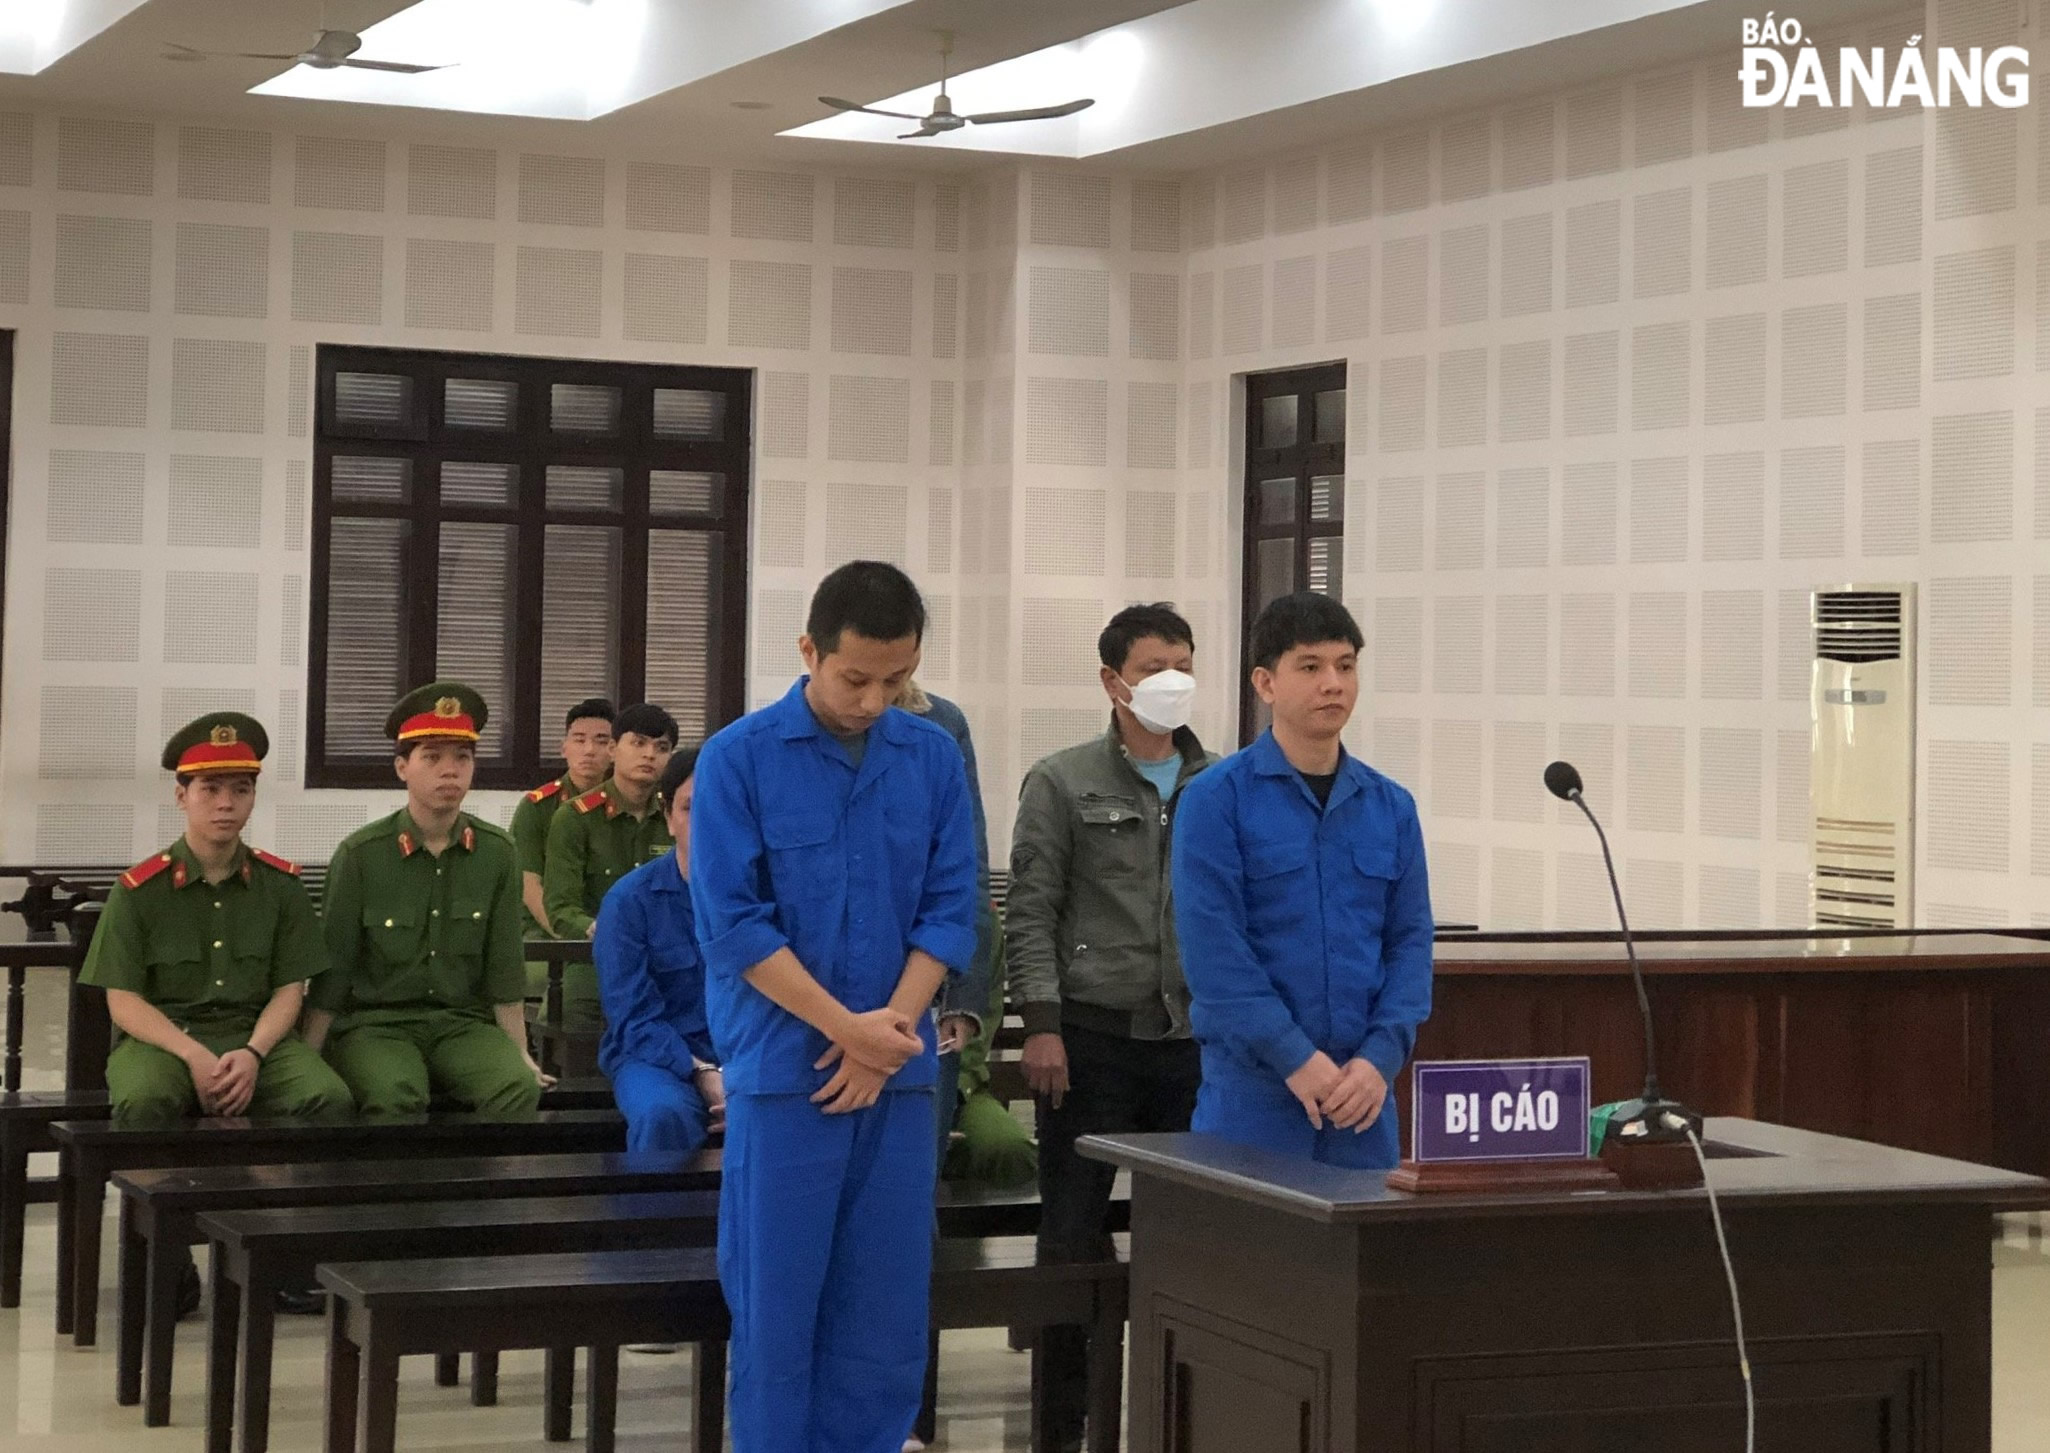 Vào tù vì bảo lãnh chuyên gia 'dỏm' ở lại Việt Nam trái phép